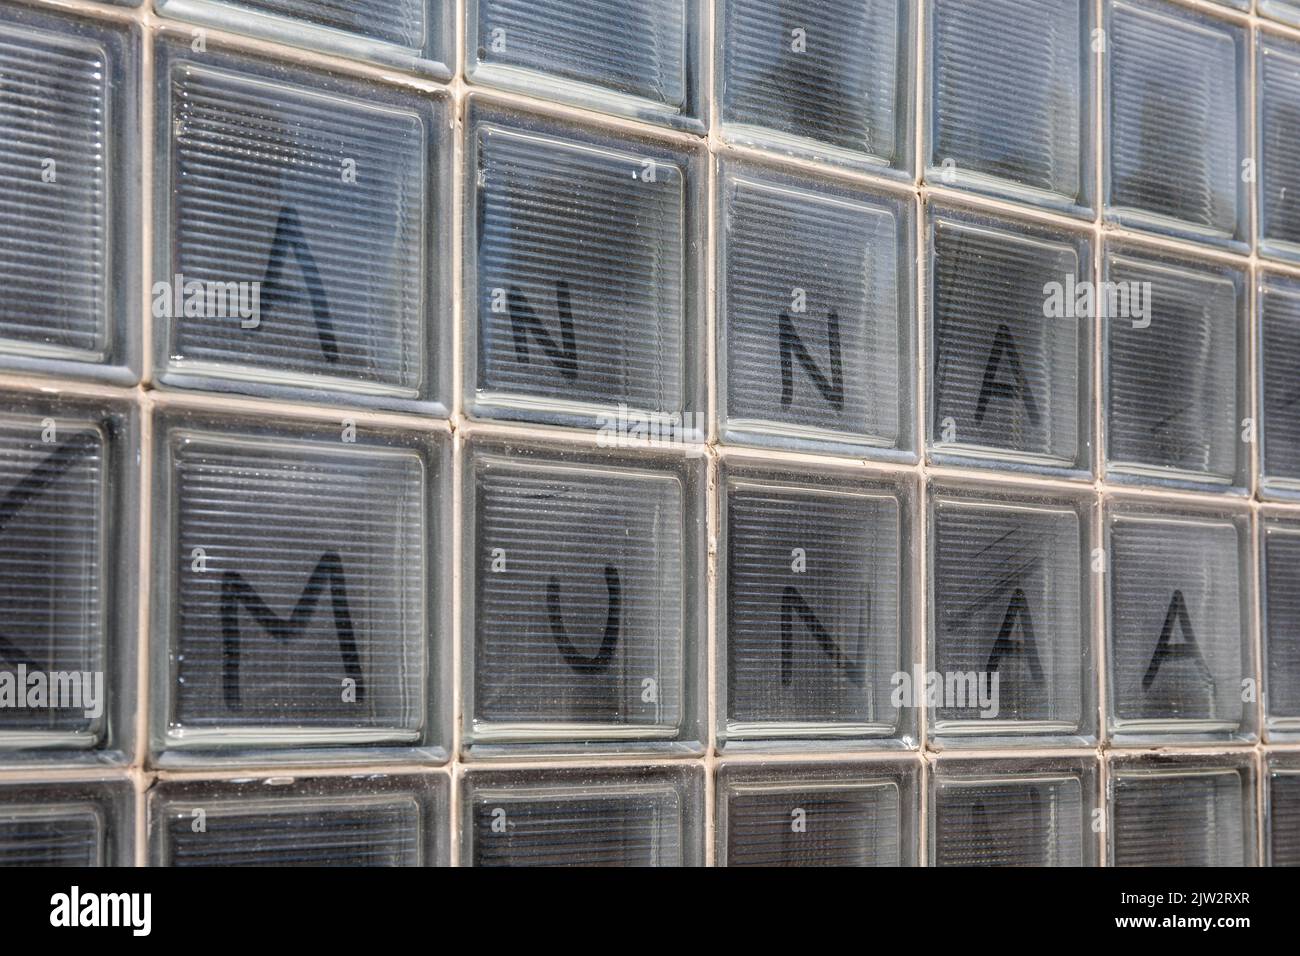 Anna munaa. Text geschrieben auf staubigen oder schmutzigen Glasblockfenstern in Helsinki, Finnland. Stockfoto